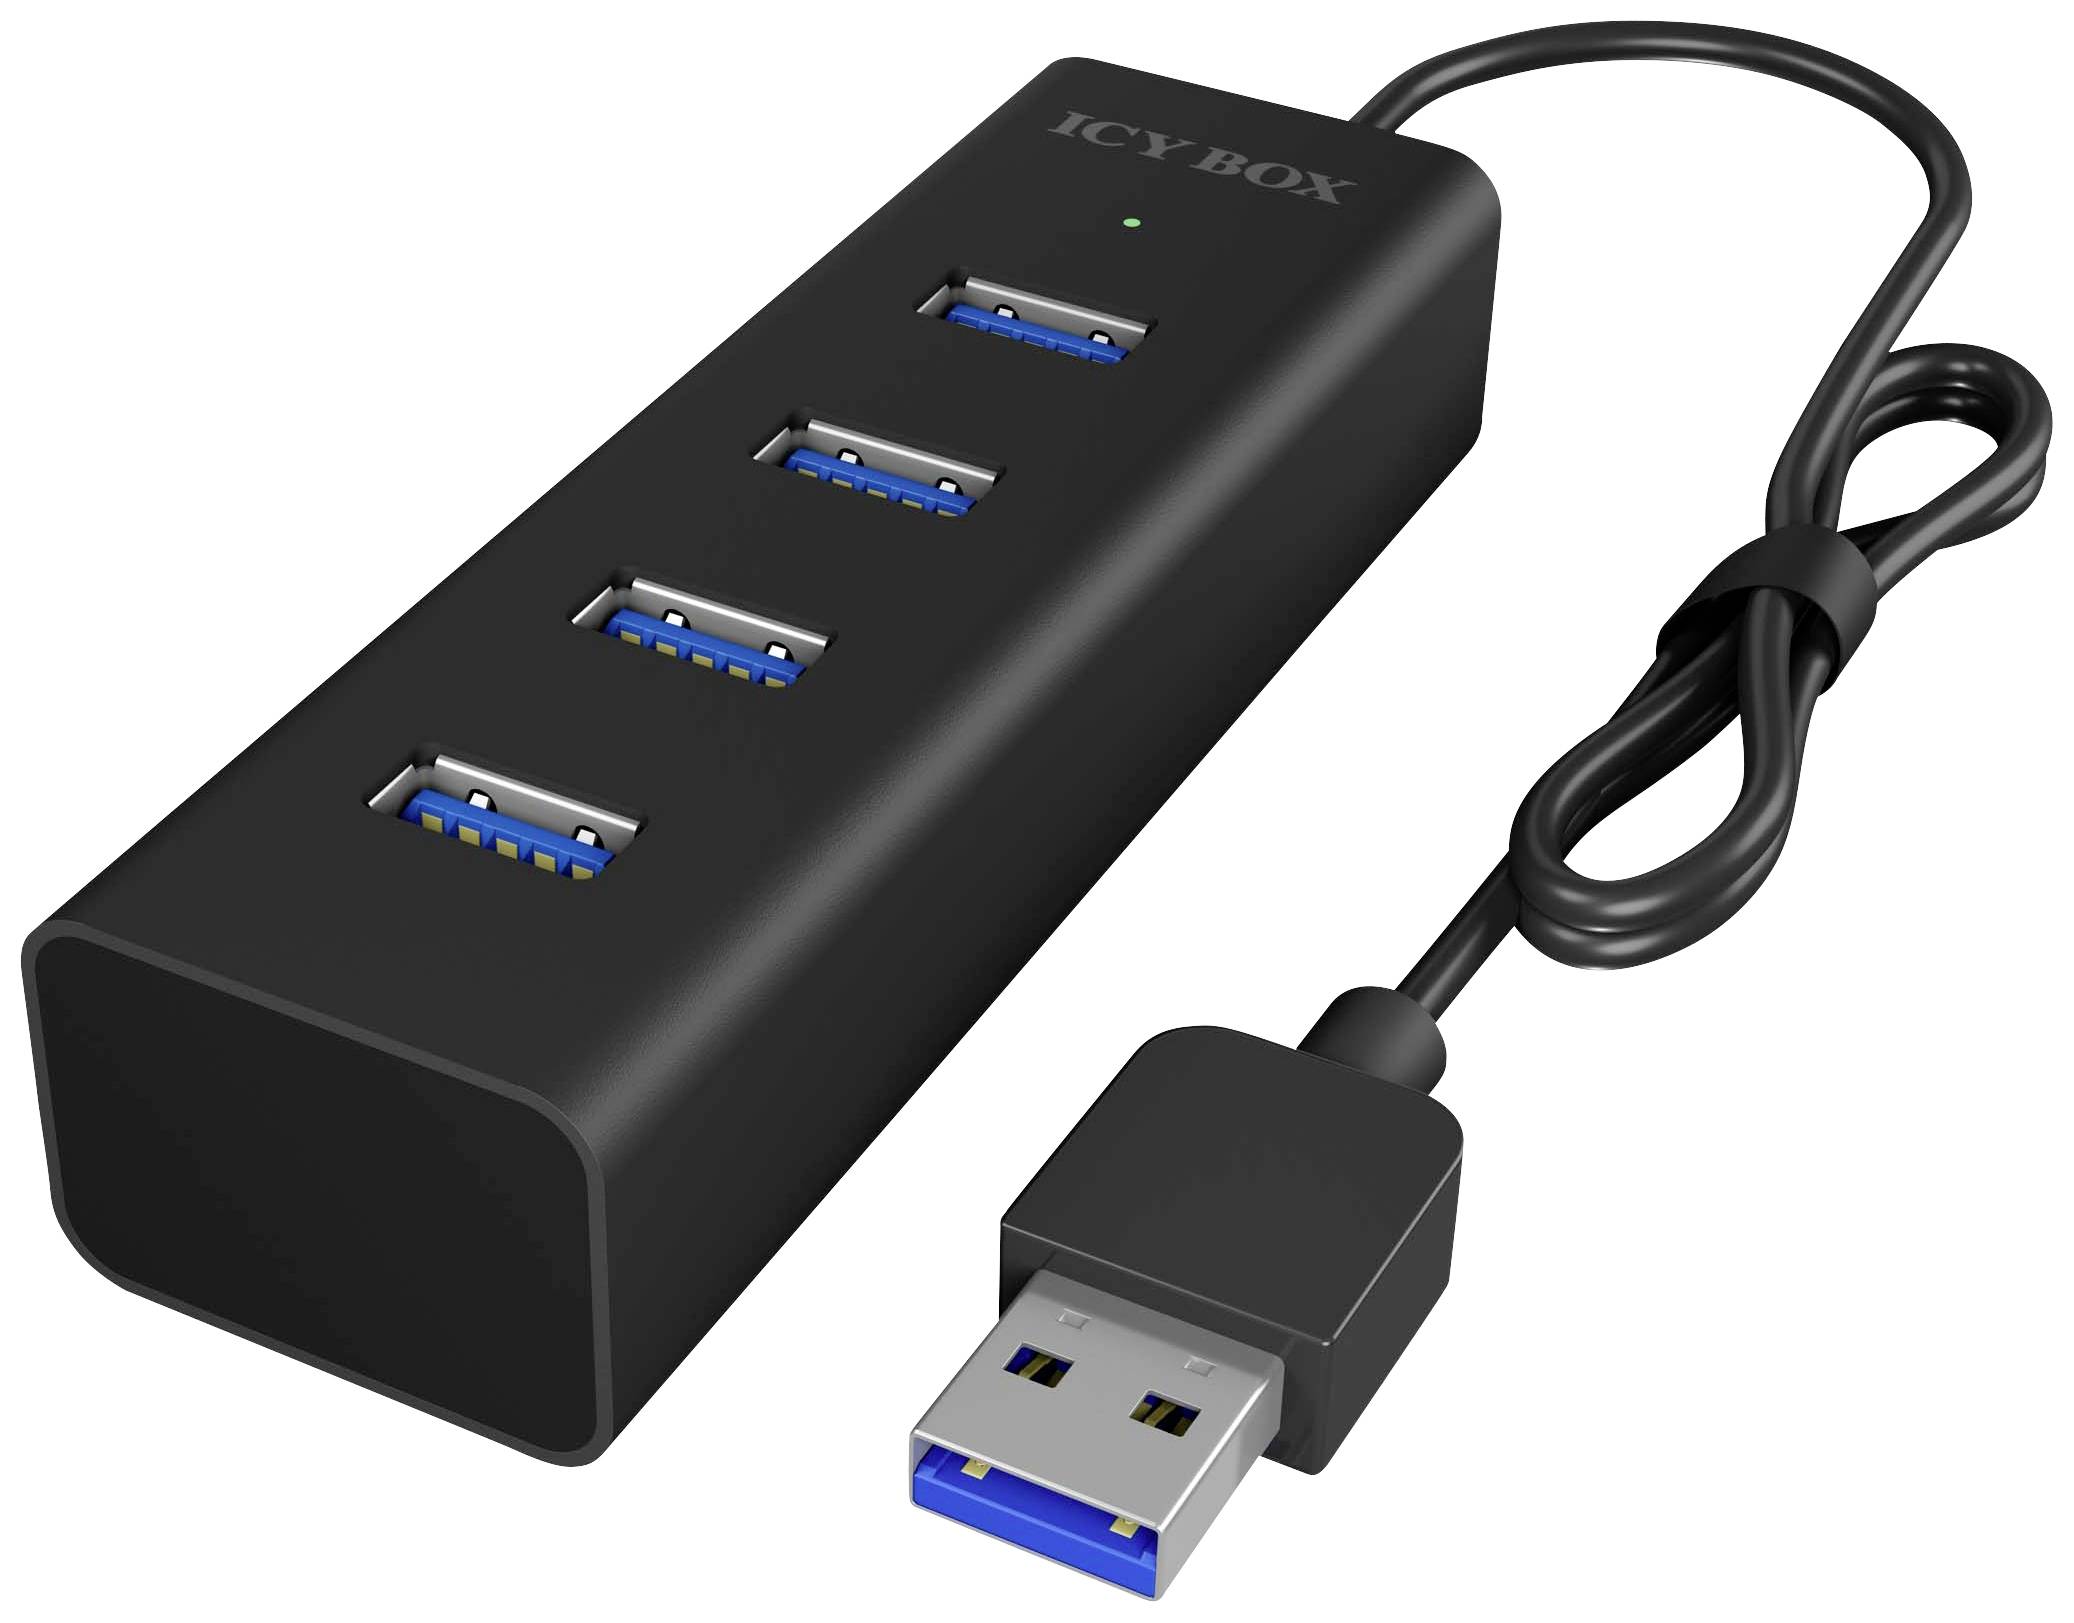 ICY BOX IB-Hub1409-U3 4 Port USB 3.0 Hub unterstuetzt Datenuebertragung bis zu 5 Gbit/s und Plug and